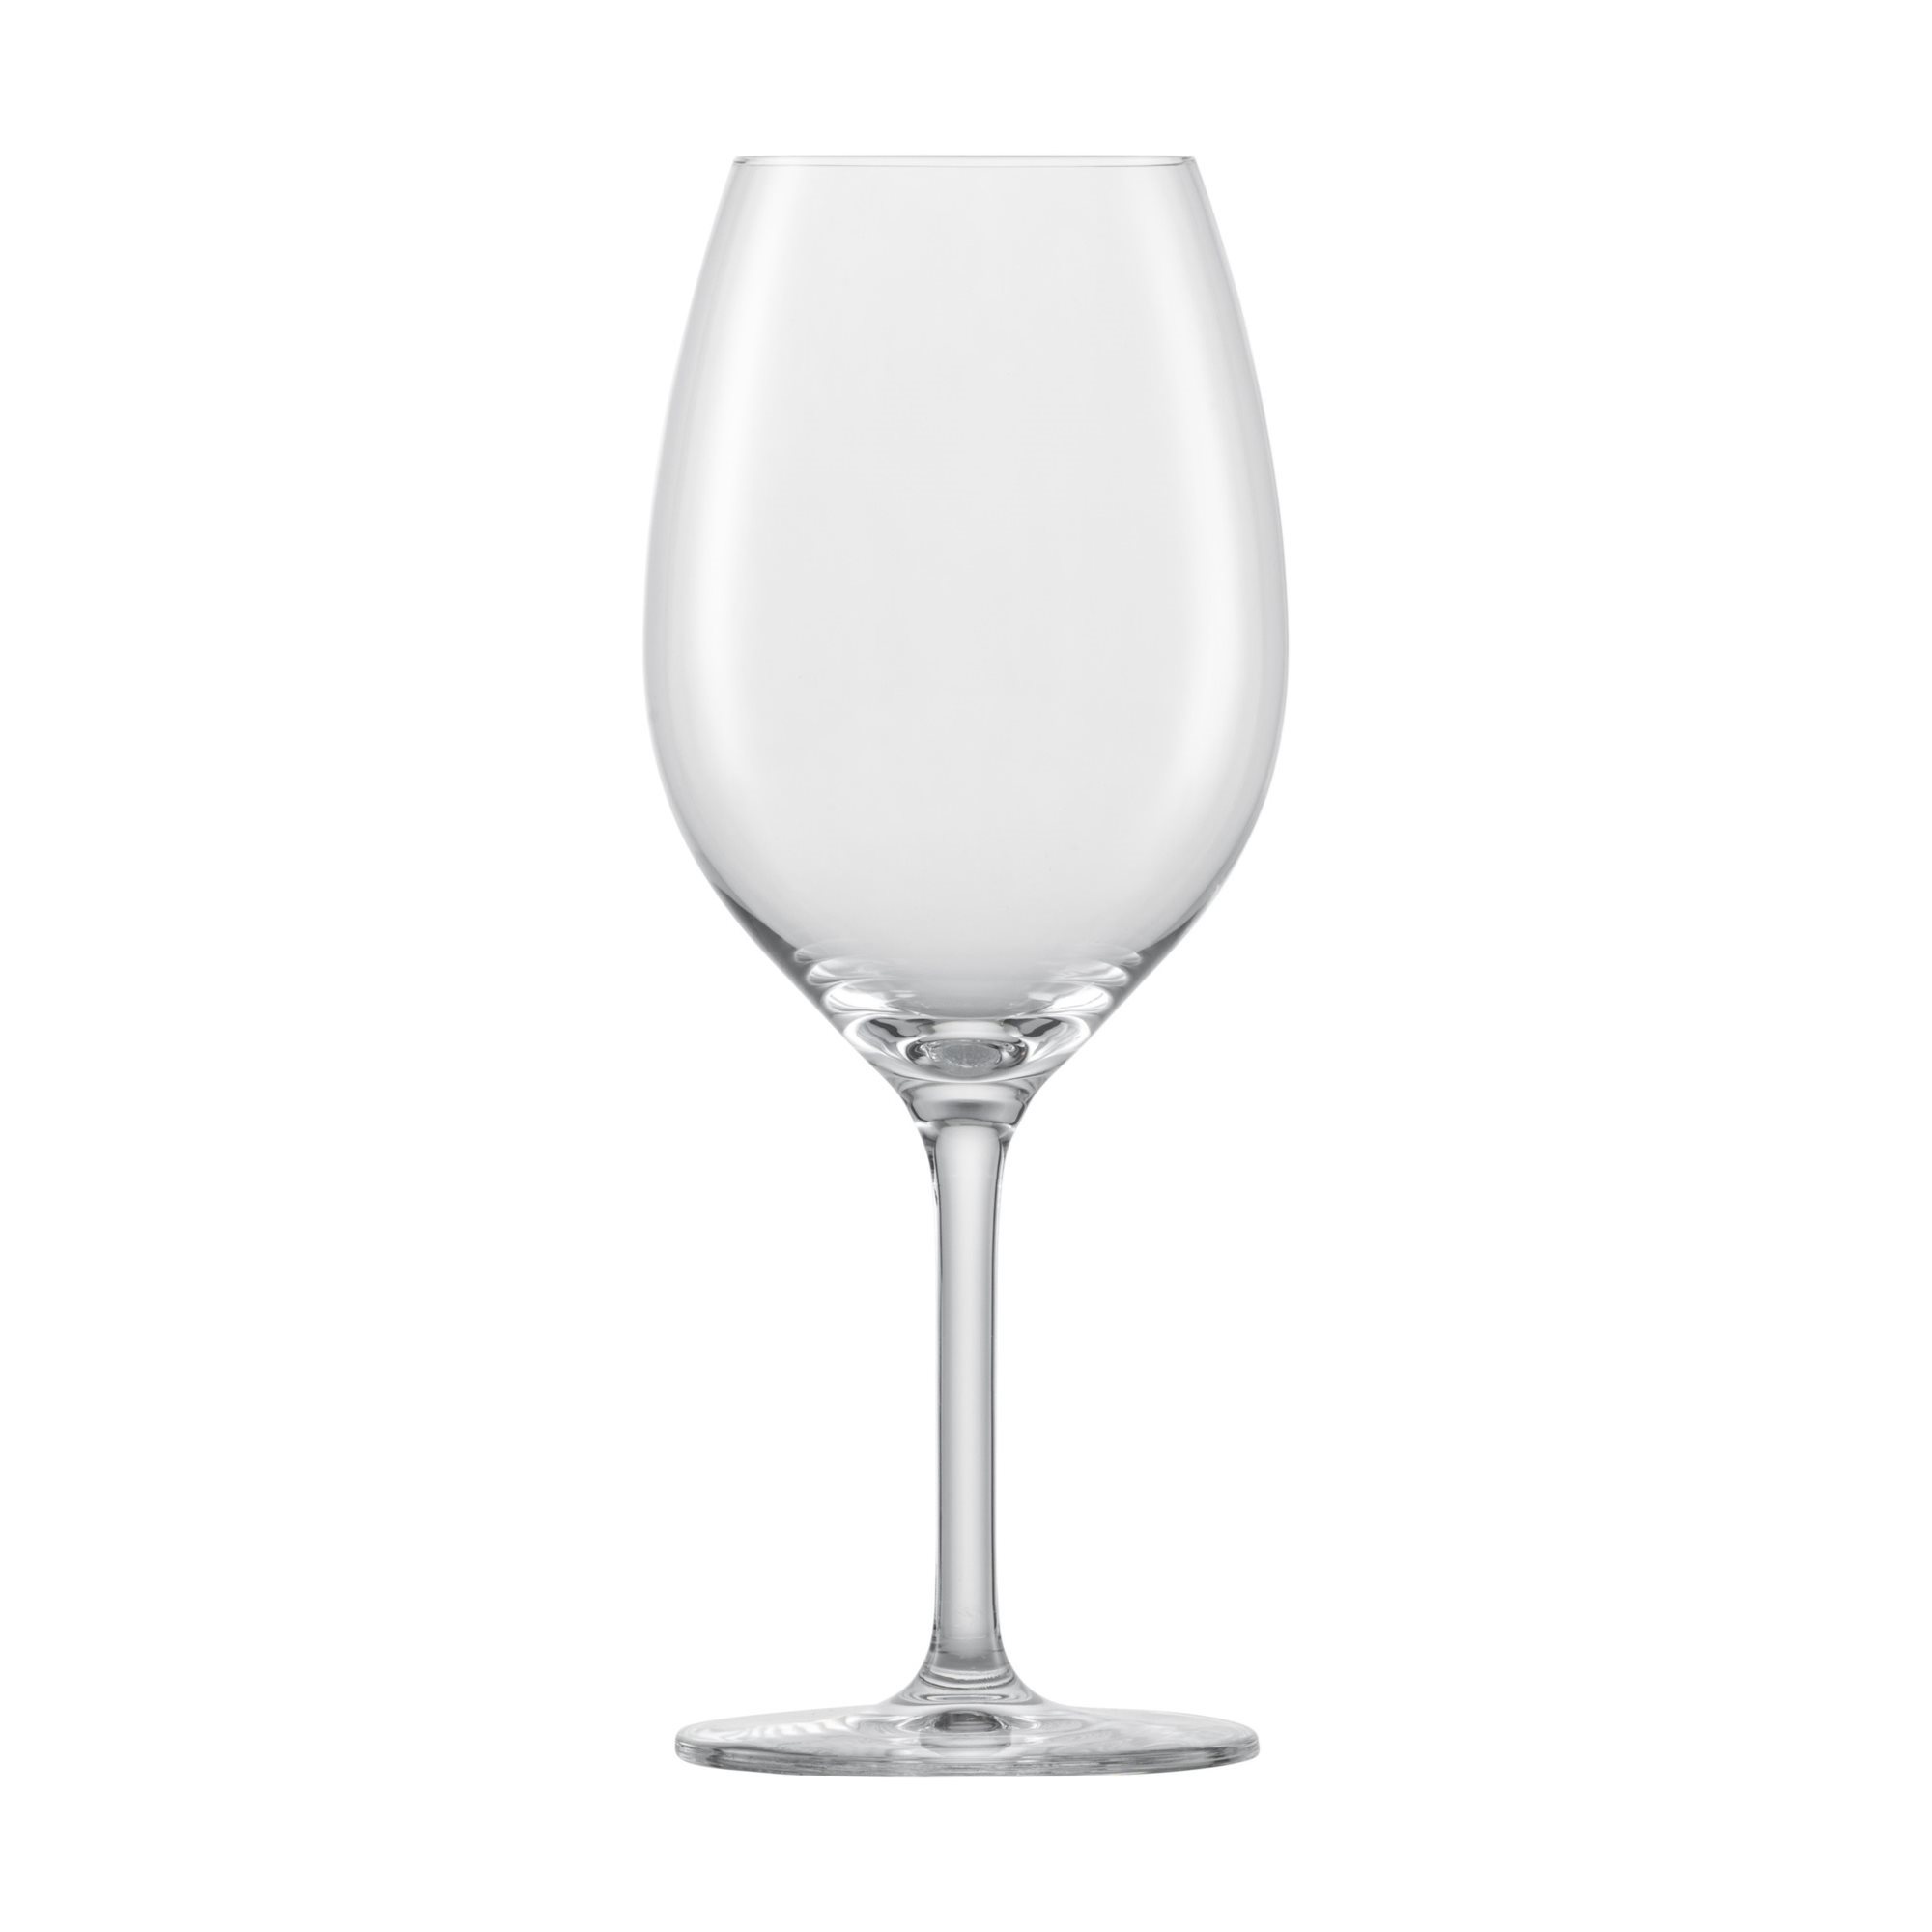 https://cdn.www.kitchenshop.eu/images/thumbs/0130790_set-6-pahare-vin-rosu-sticla-cristalina-475ml-banquet-schott-zwiesel.jpeg